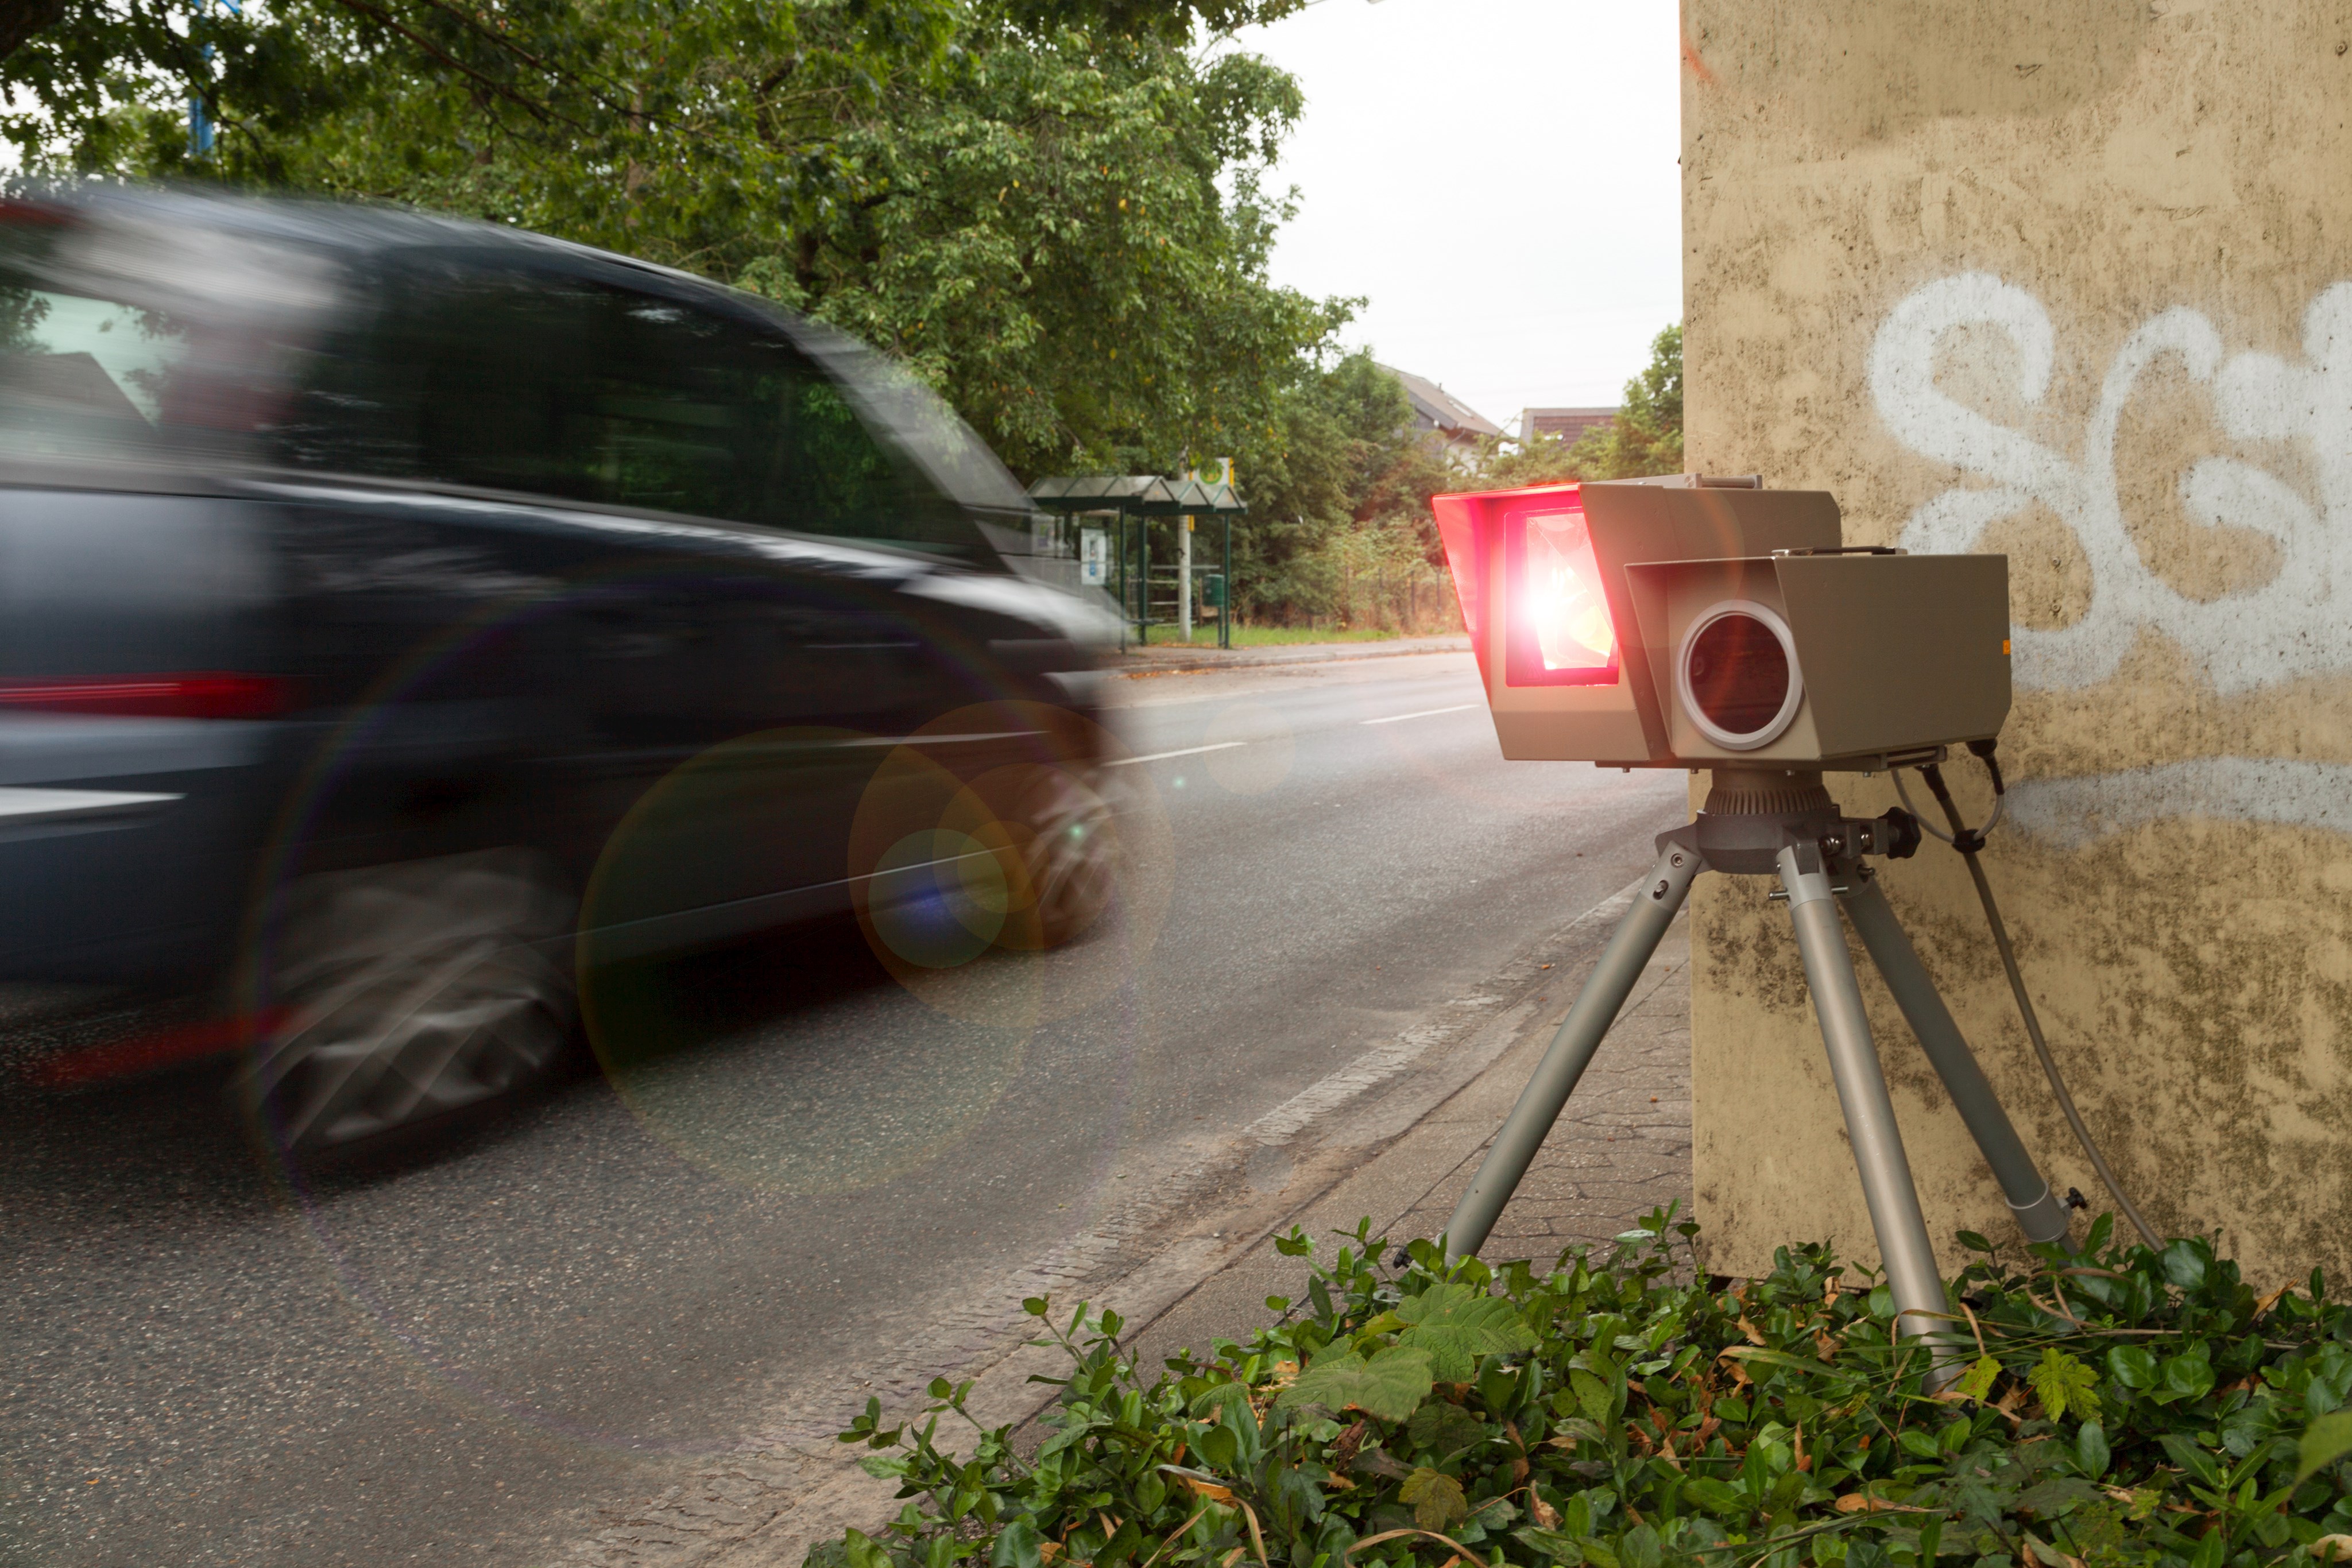 Das Bild zeigt eine auslösende Geschwindigkeitsmessanlage mit vorbeifahrendem Auto.